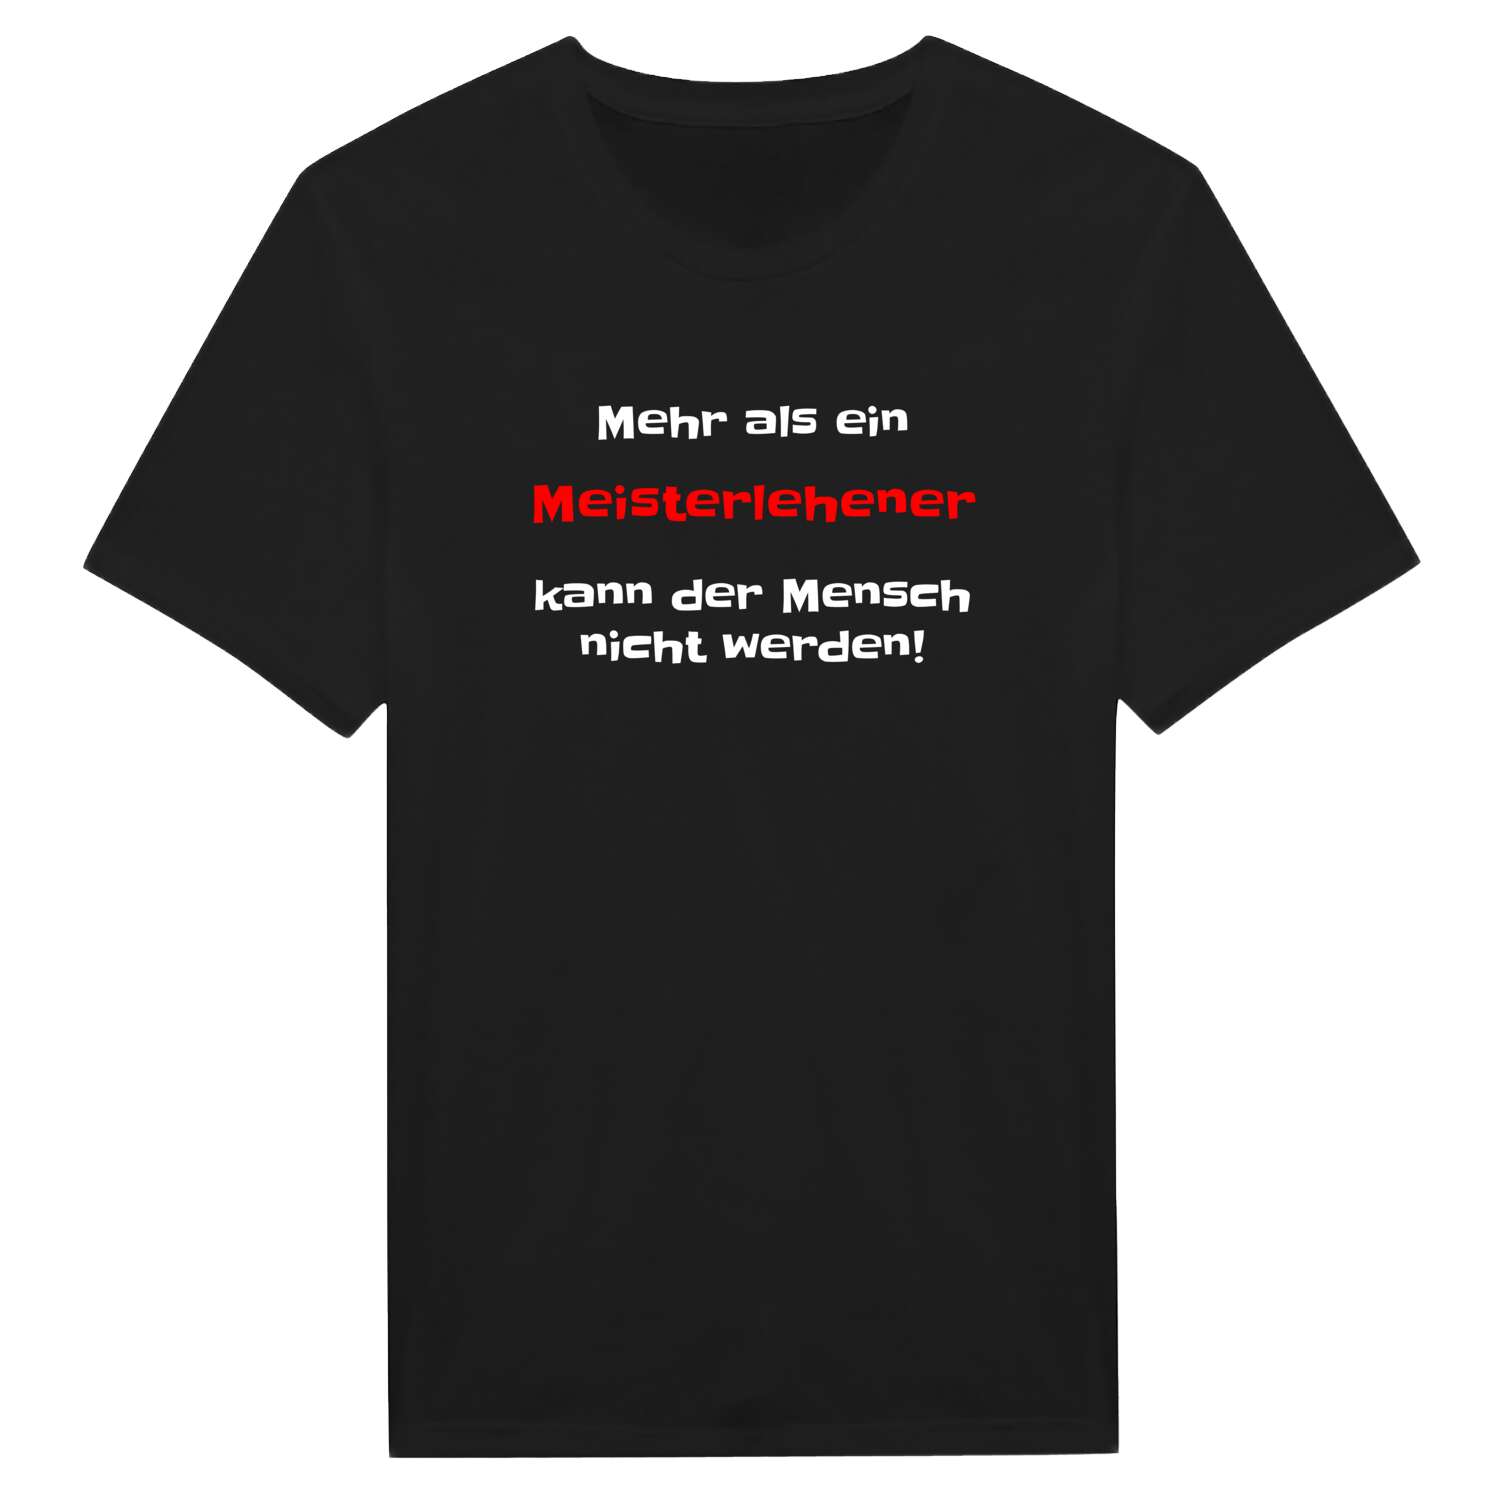 Meisterlehen T-Shirt »Mehr als ein«